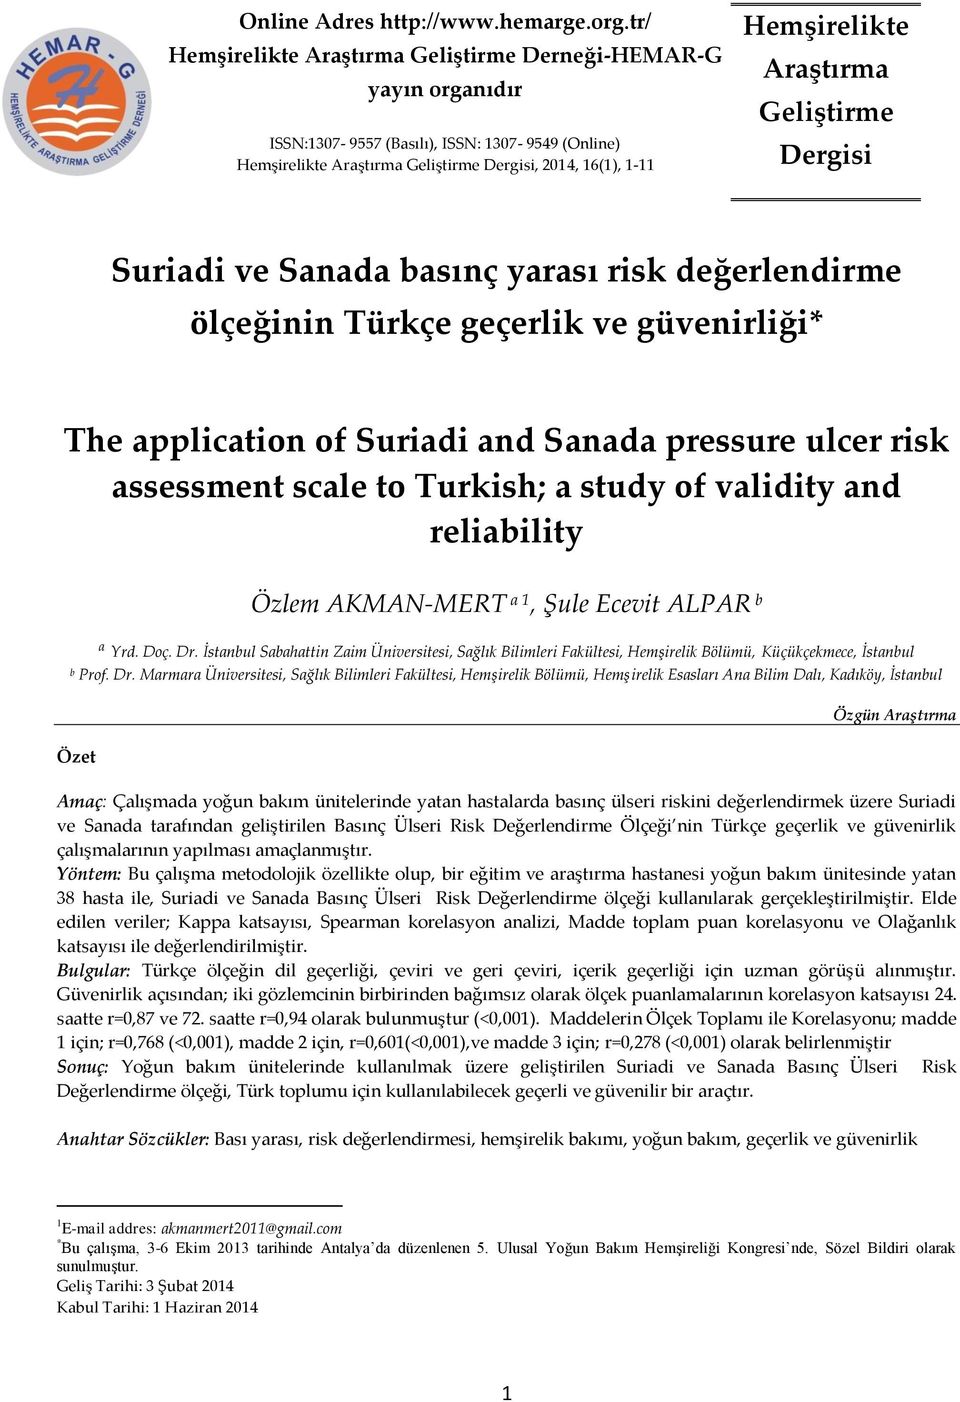 Araştırma Geliştirme Dergisi Suriadi ve Sanada basınç yarası risk değerlendirme ölçeğinin Türkçe geçerlik ve güvenirliği* The application of Suriadi and Sanada pressure ulcer risk assessment scale to